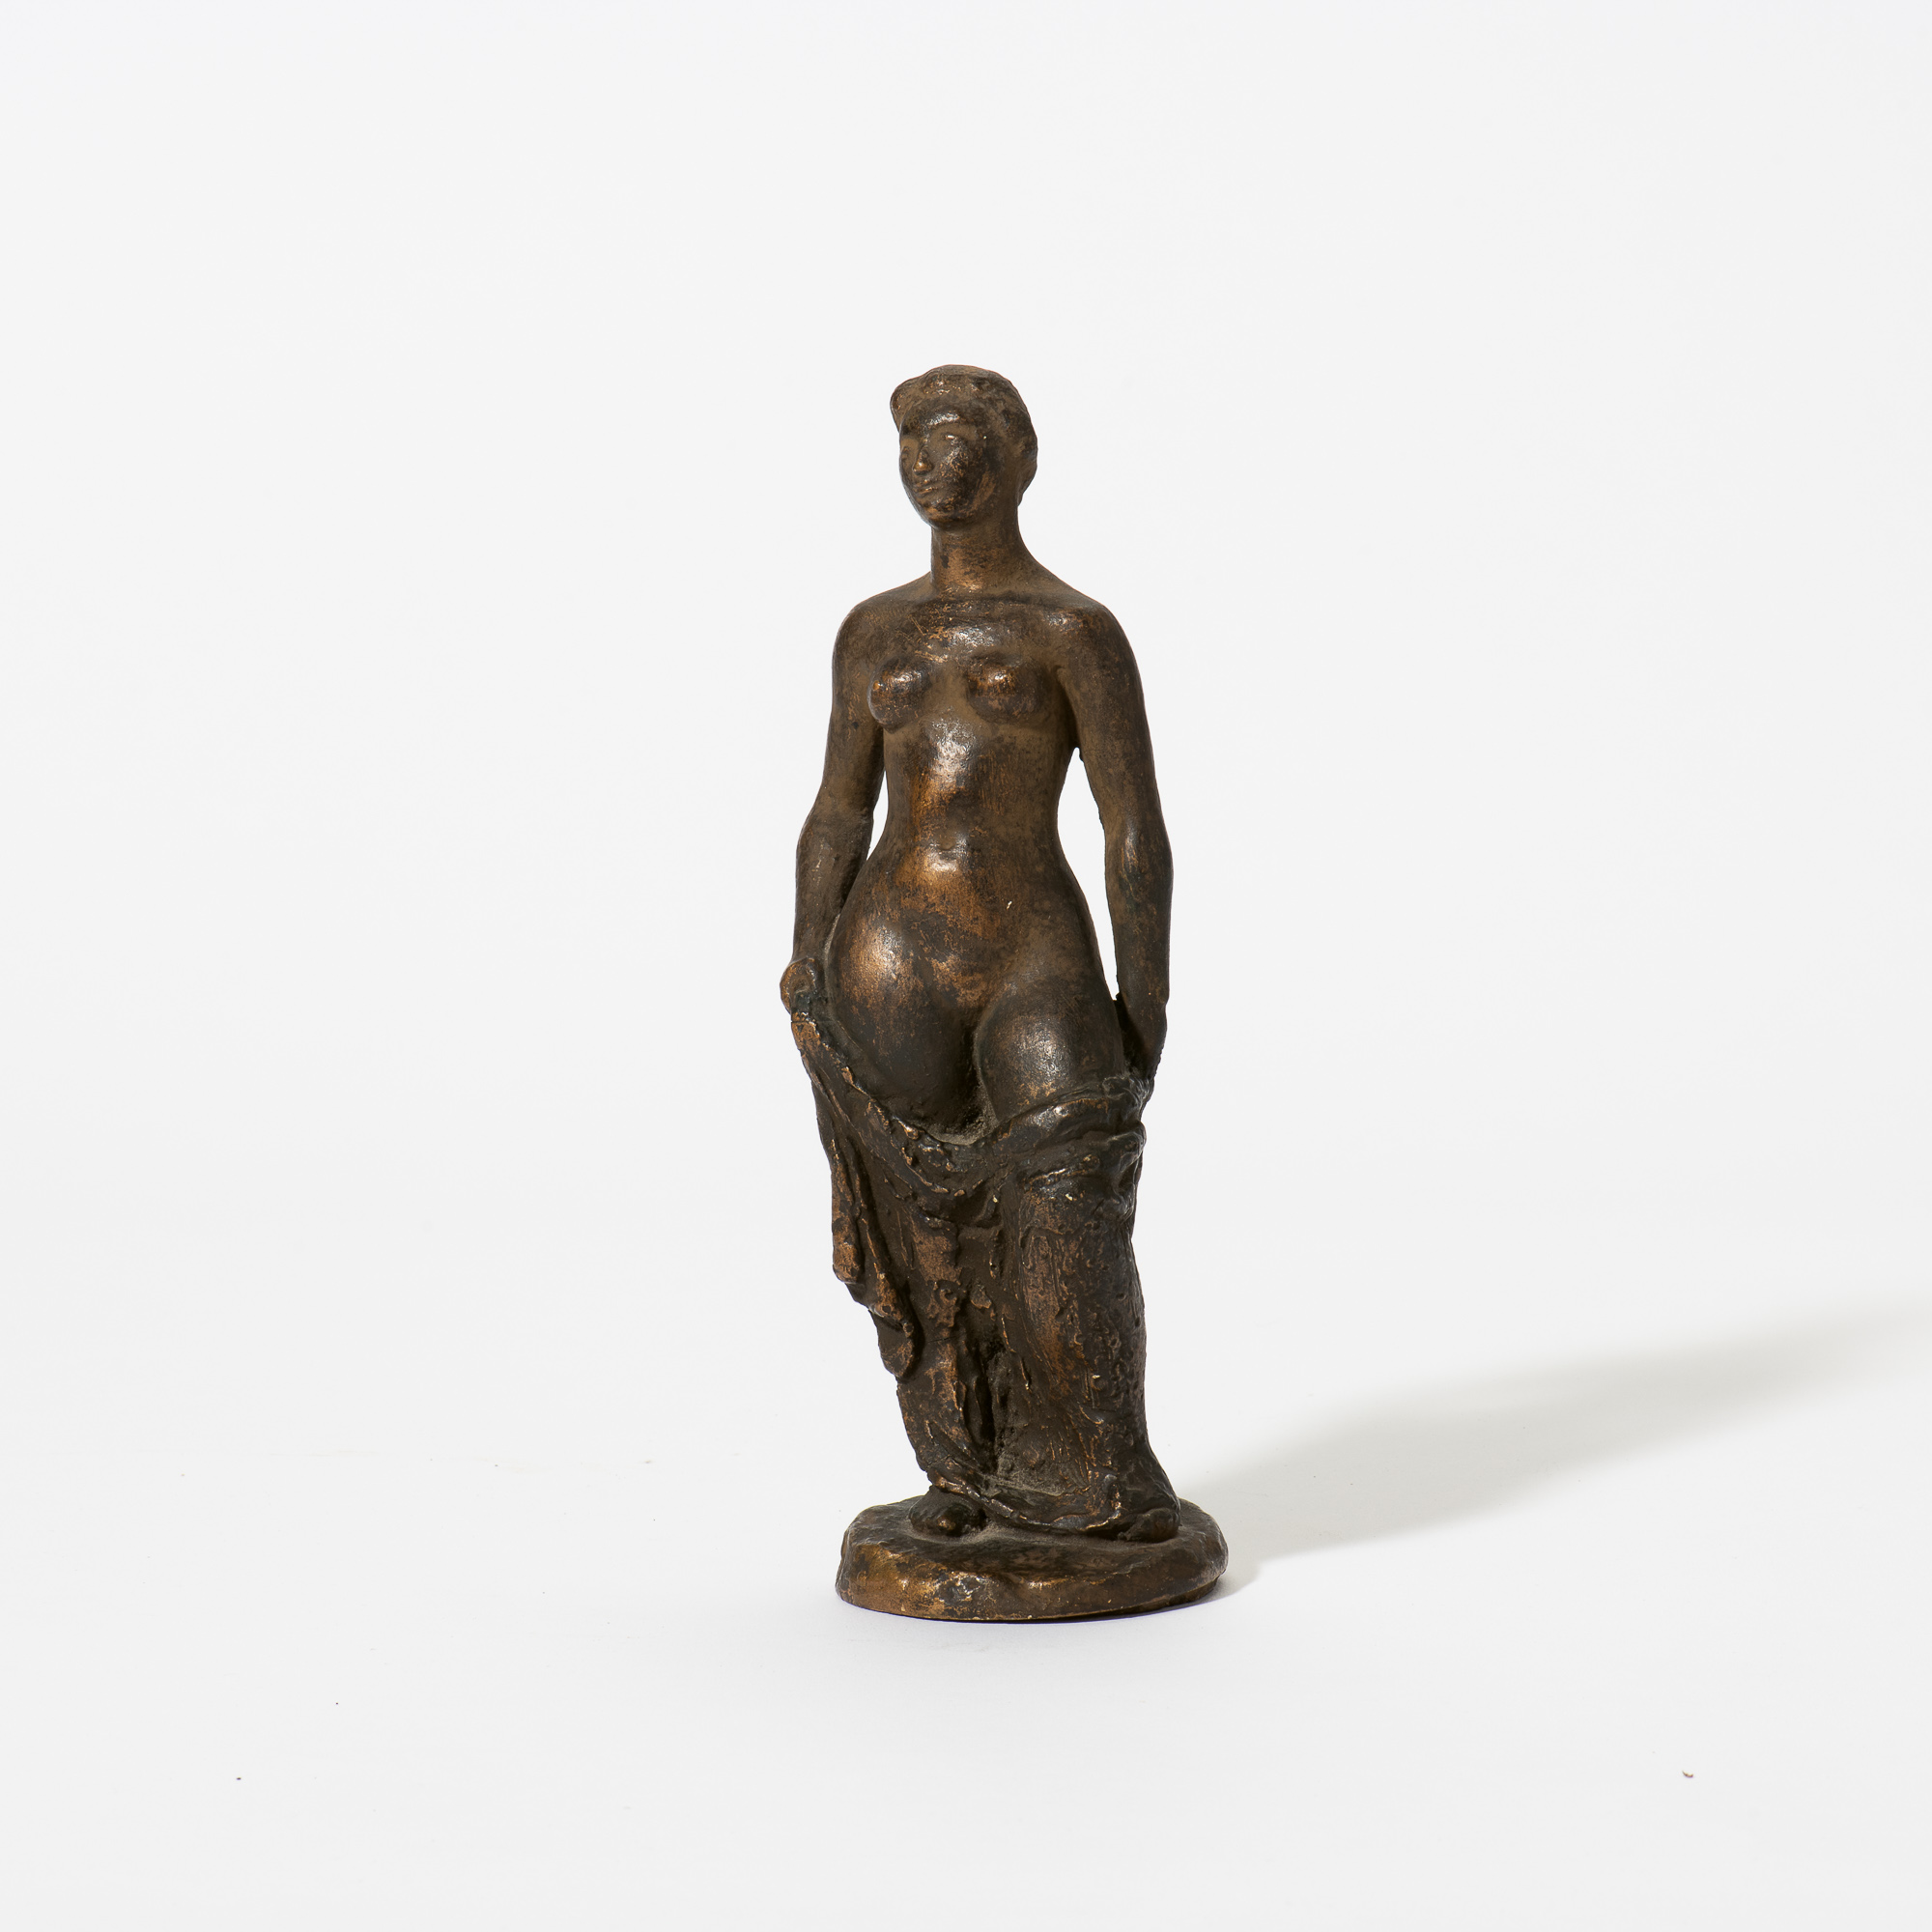 Staand naakt met draperie (Standing nude with drapery) (1943)